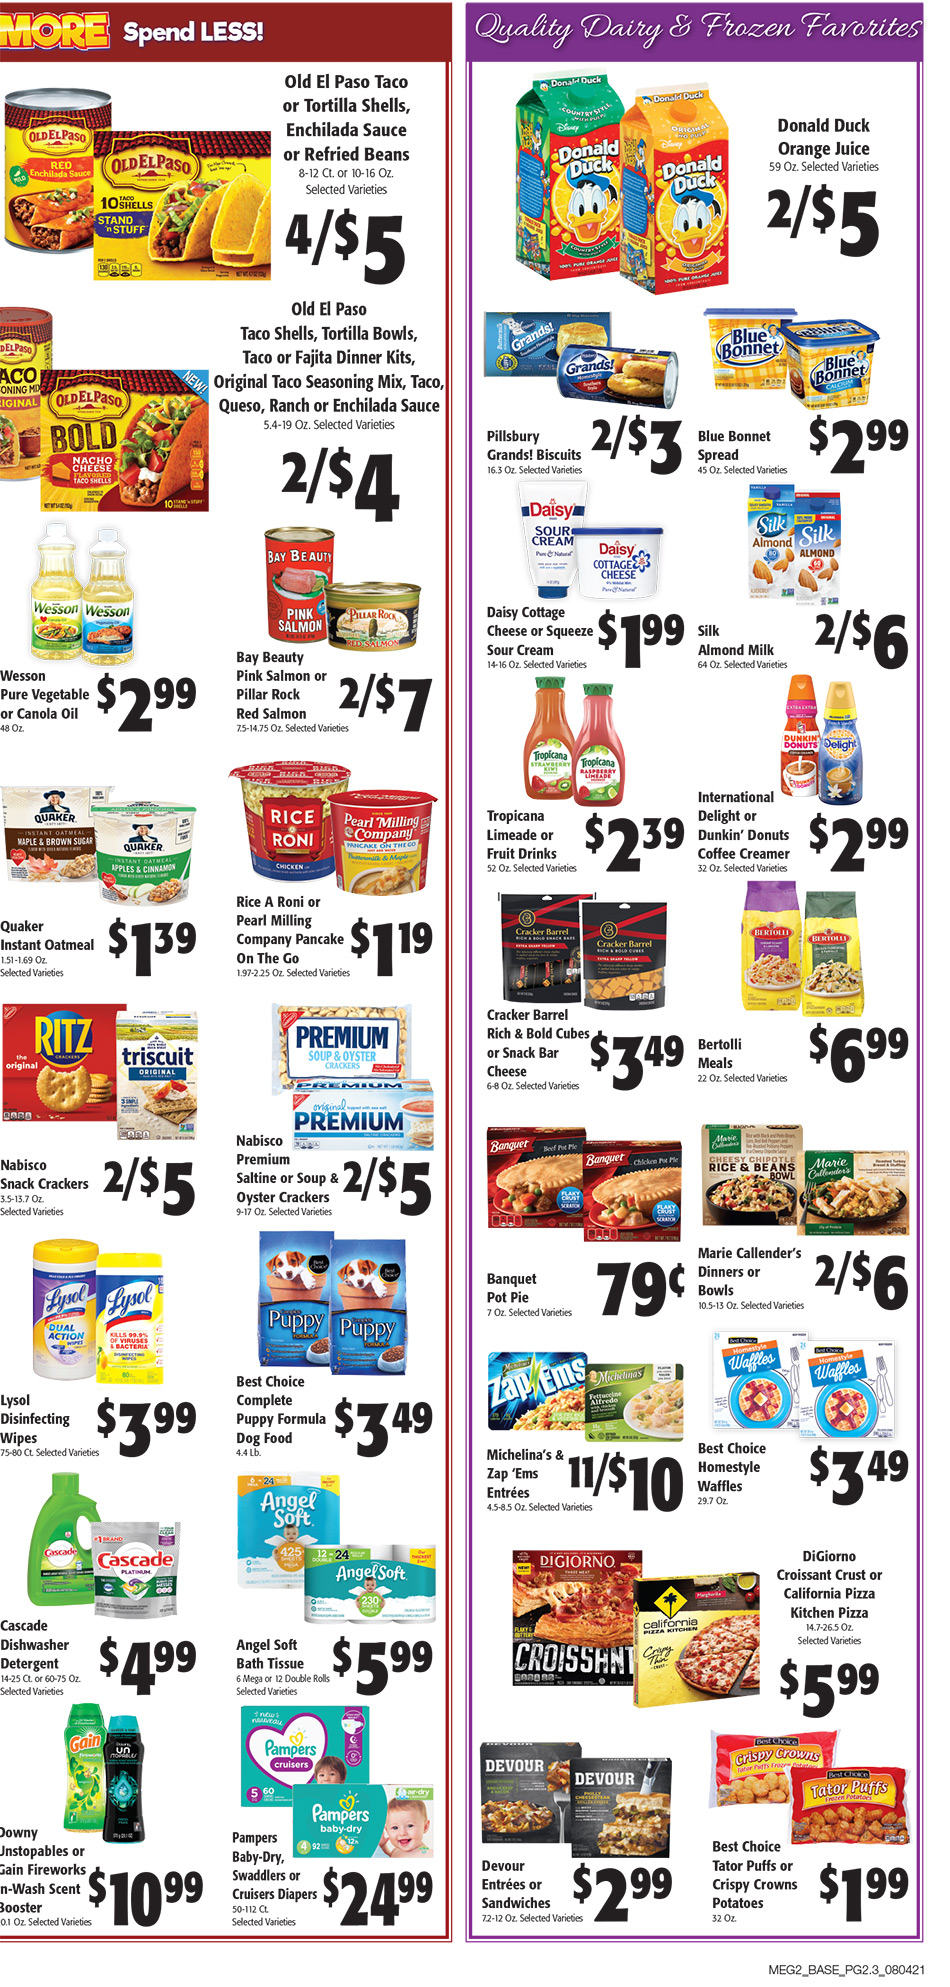 Portageville Food Rite - Weekly Specials - Page 1 07/06/2021